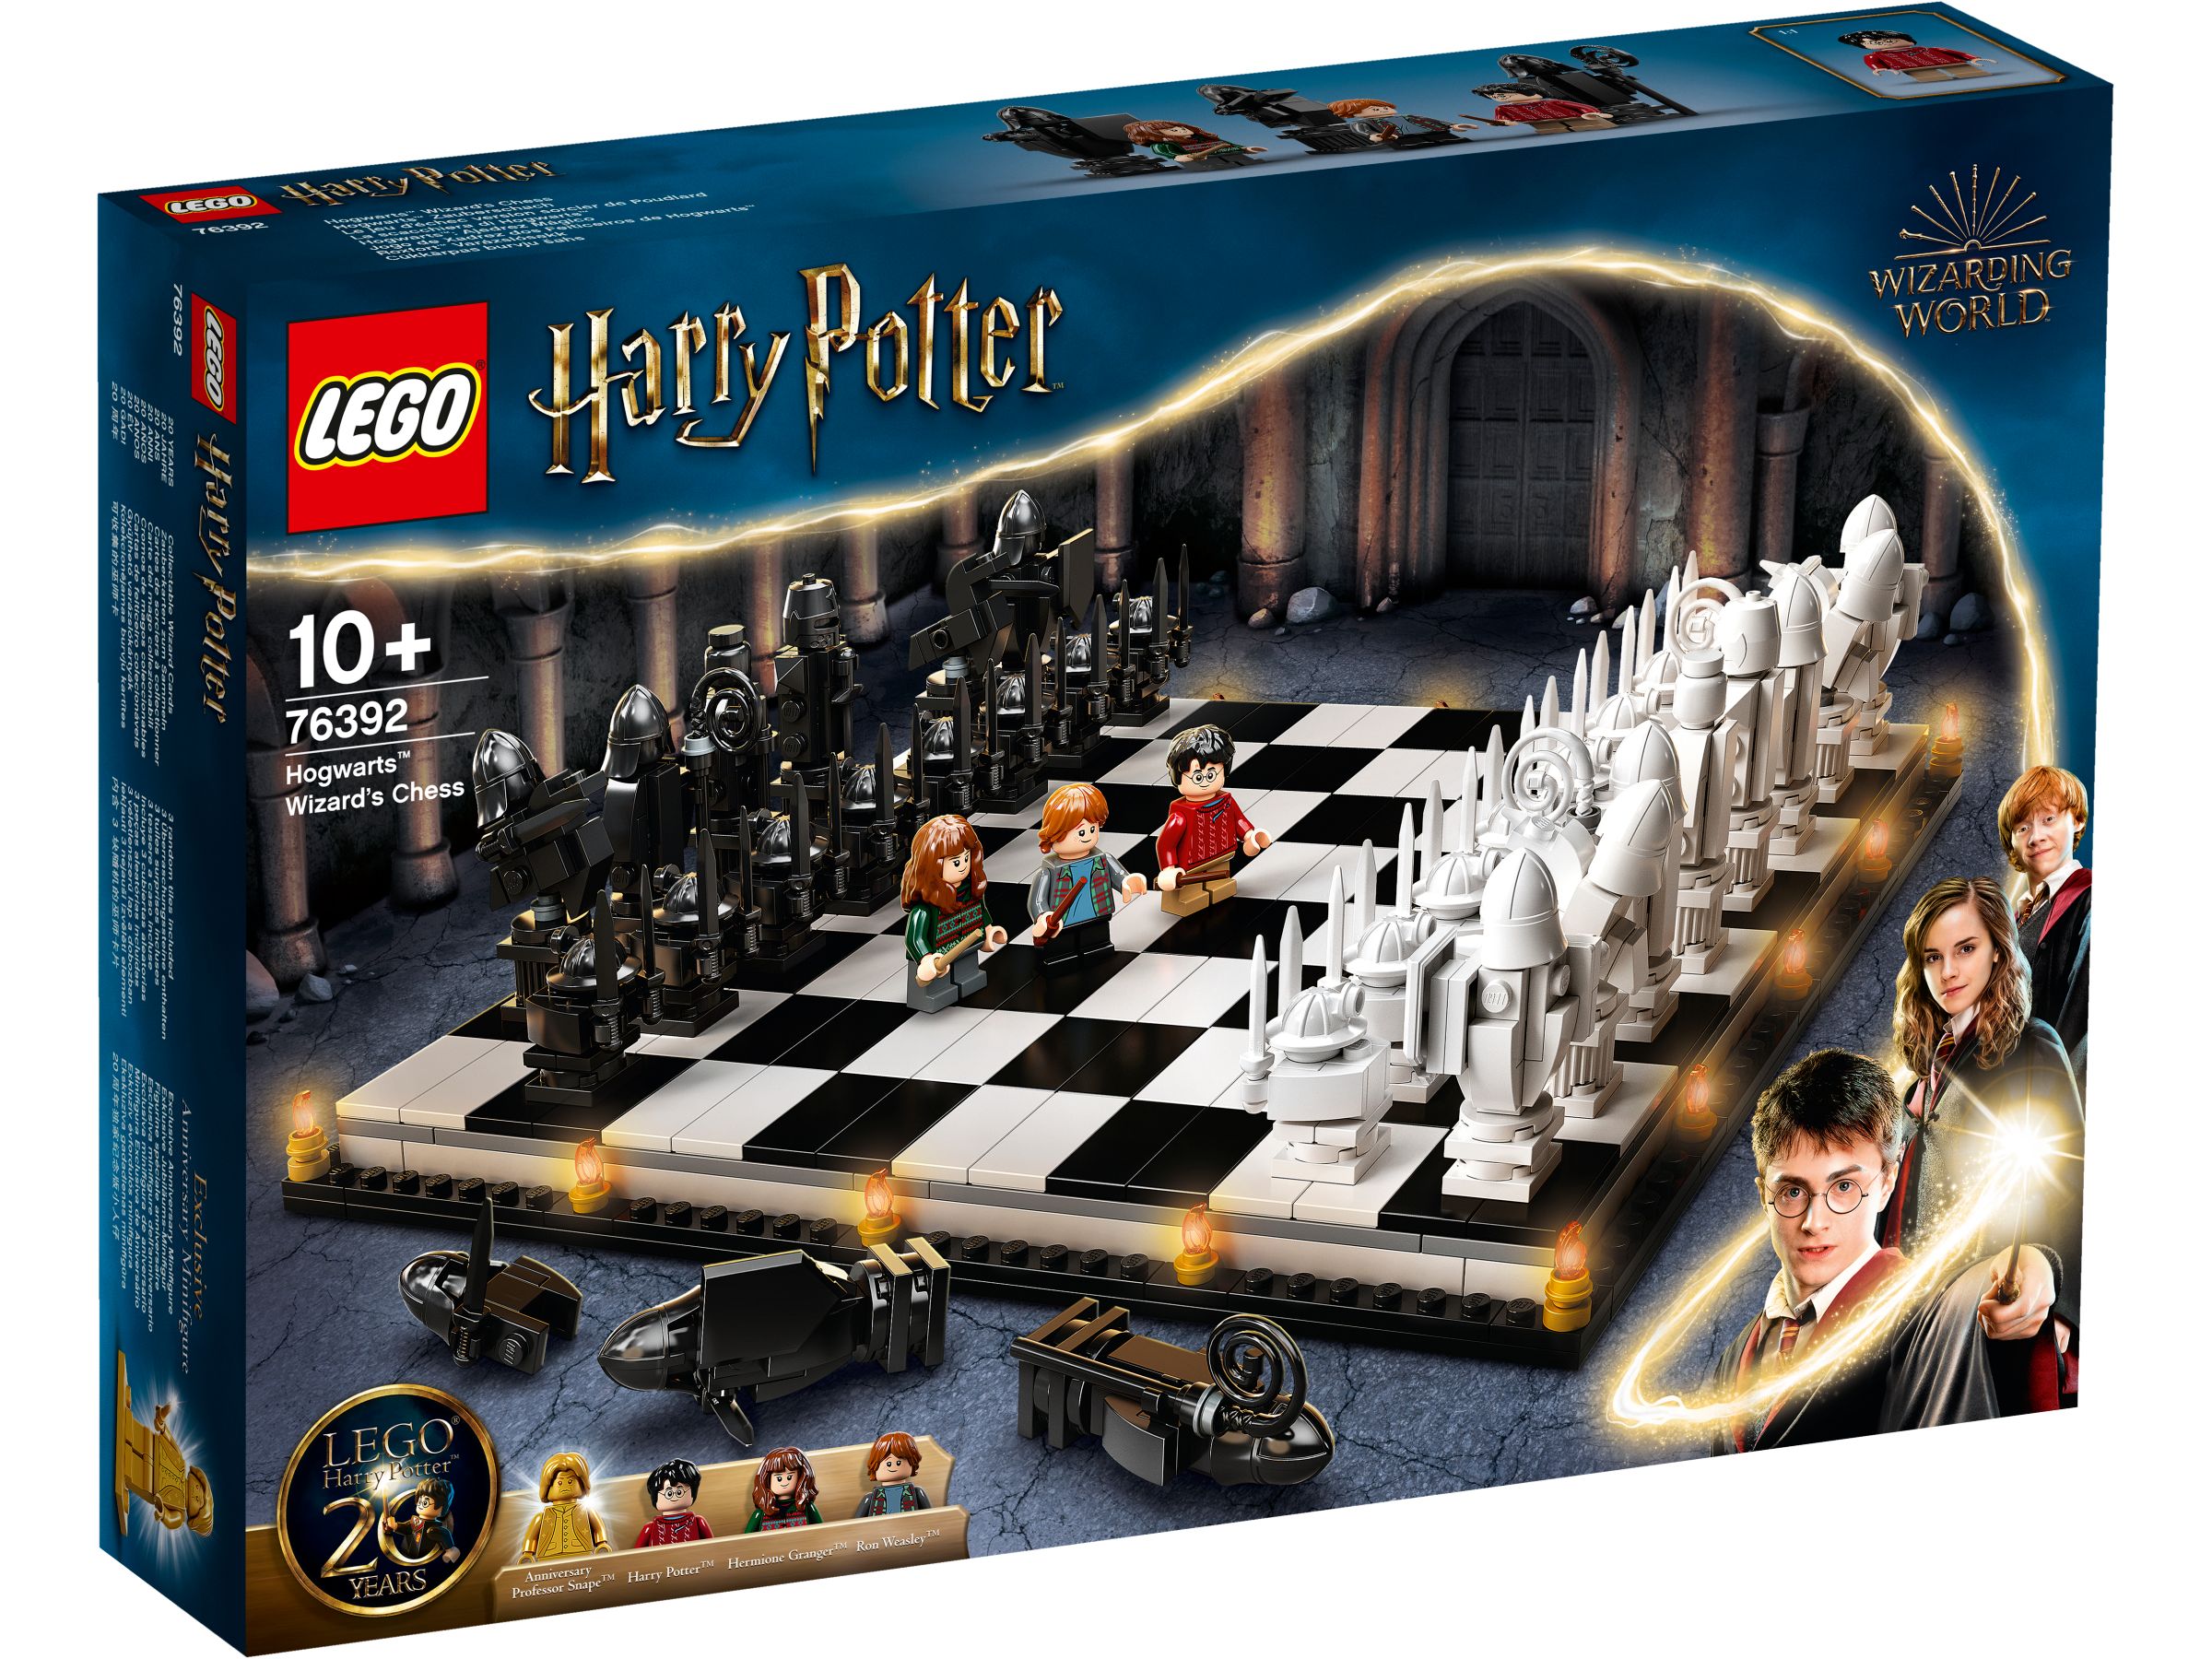 LEGO Harry Potter 76392 Hogwarts™ Zauberschach LEGO_76392_box1_v29.jpg